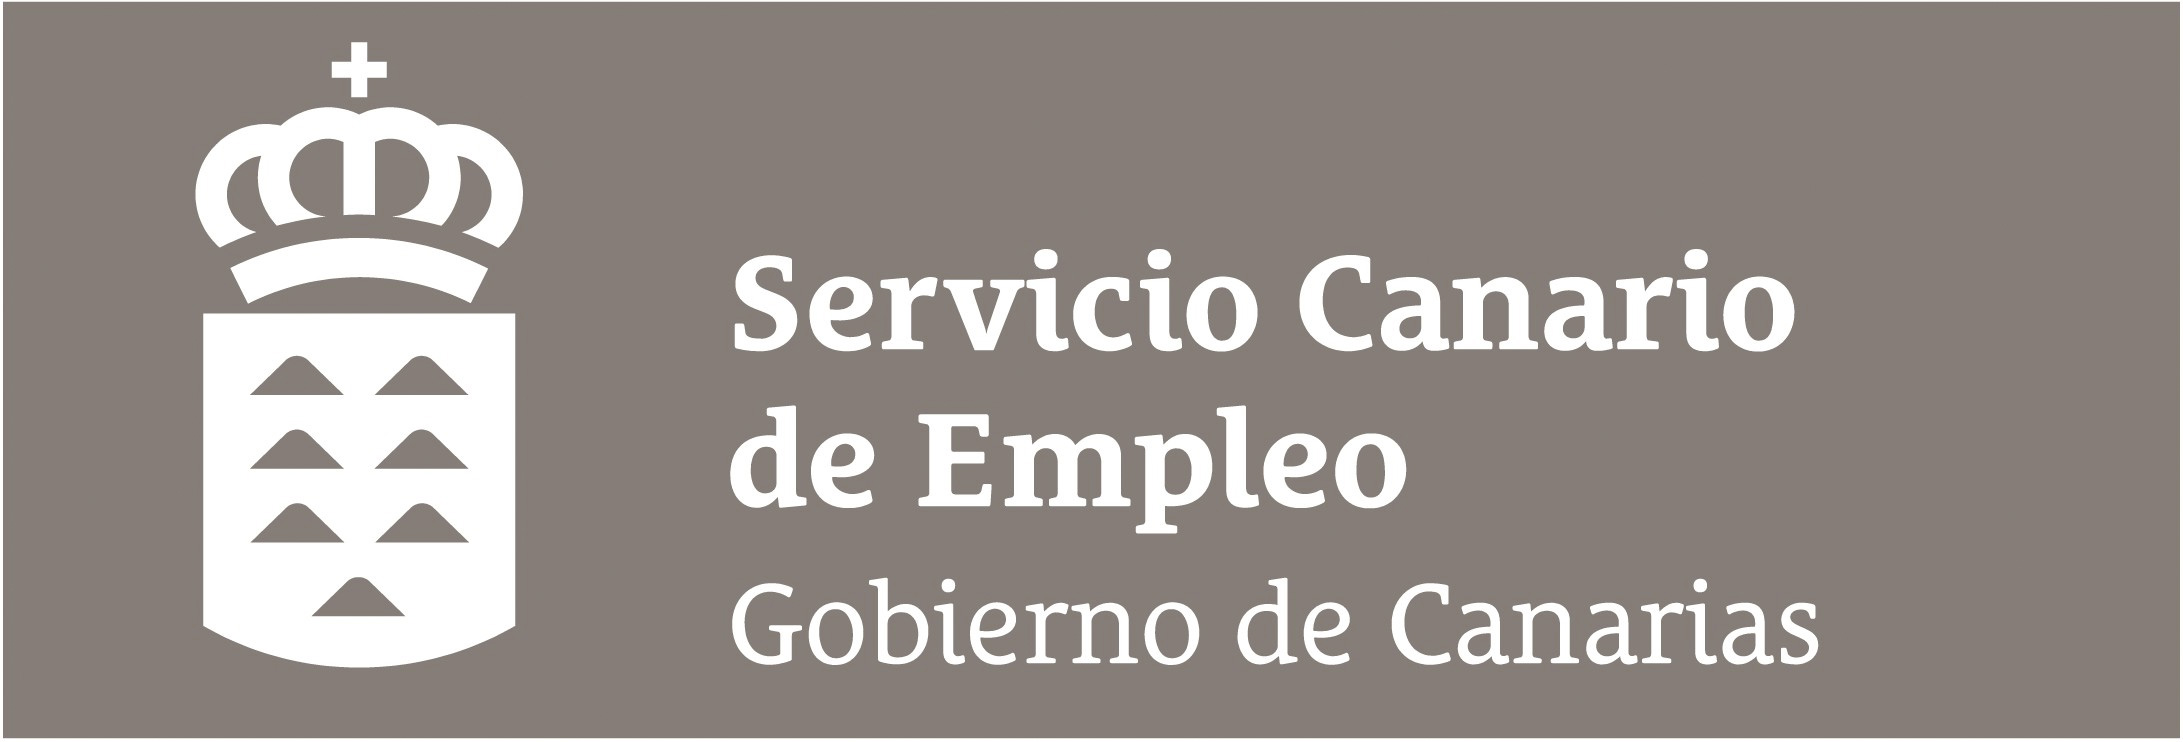 logo-servicio-canario-de-empleo